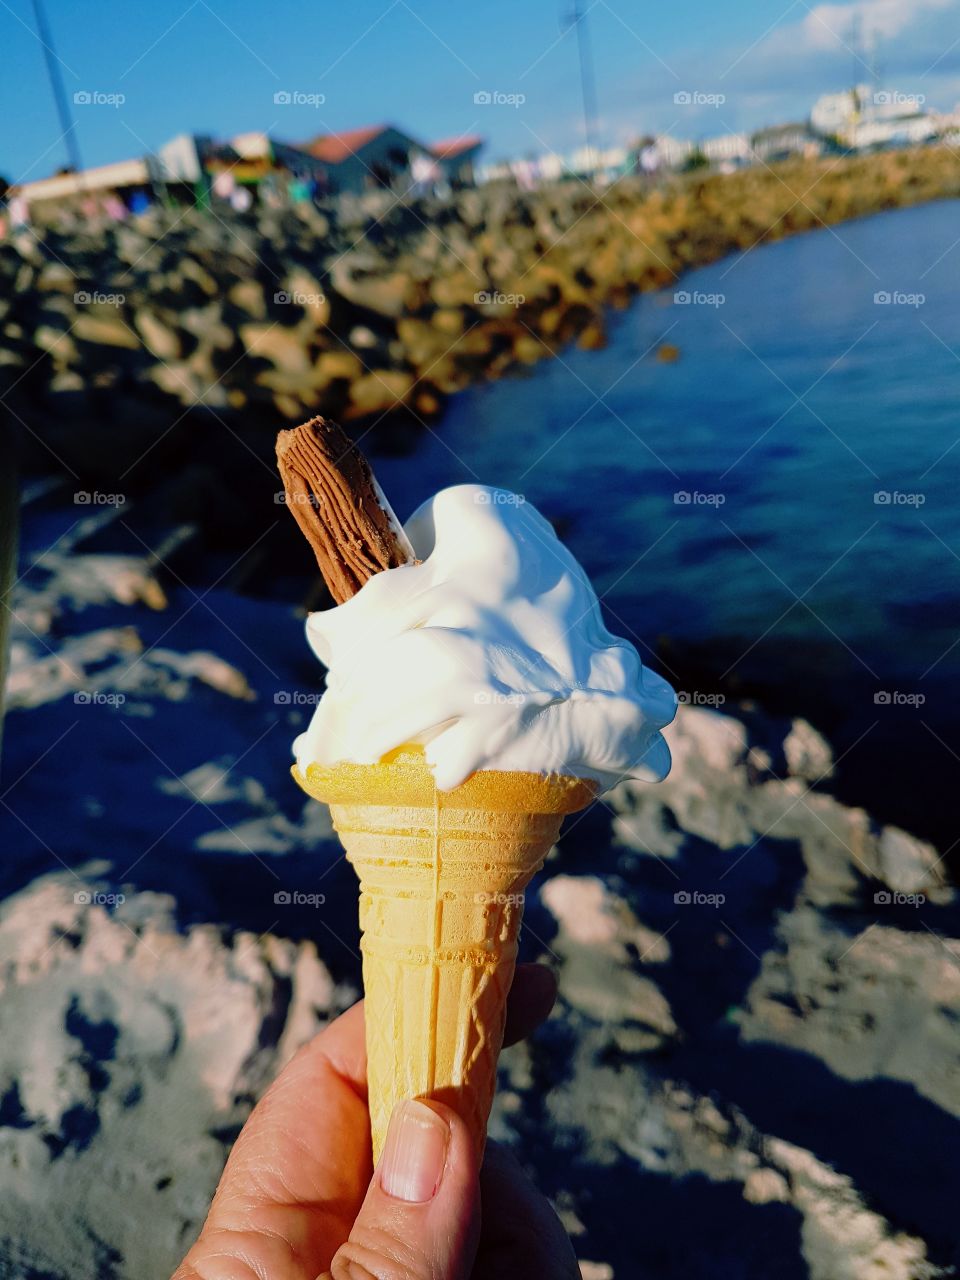 ice cream in the sun